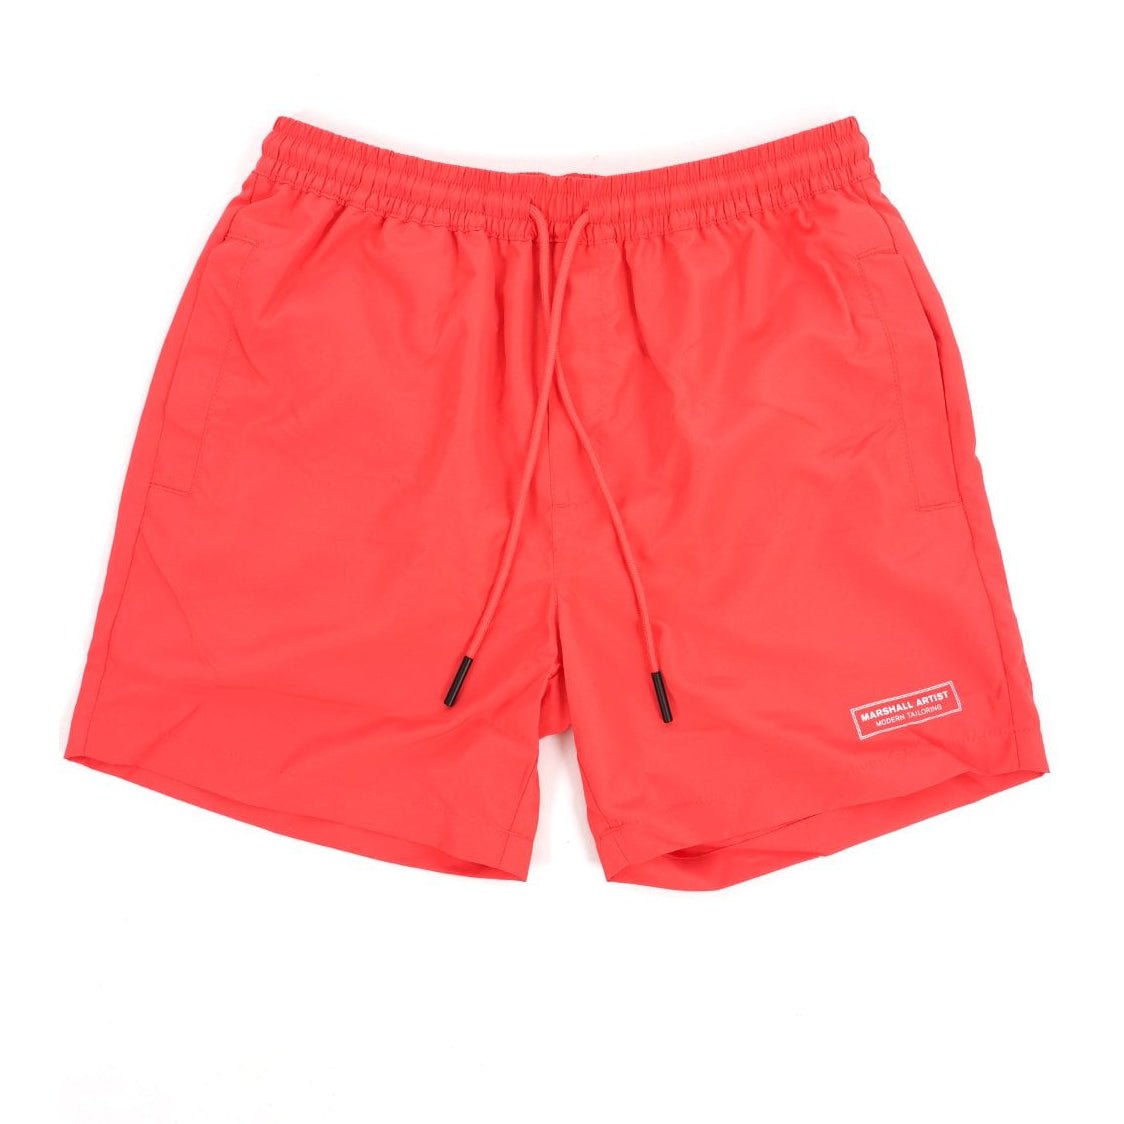 Marshall Artist Signature Swim Shorts - Coral - Escape Menswear